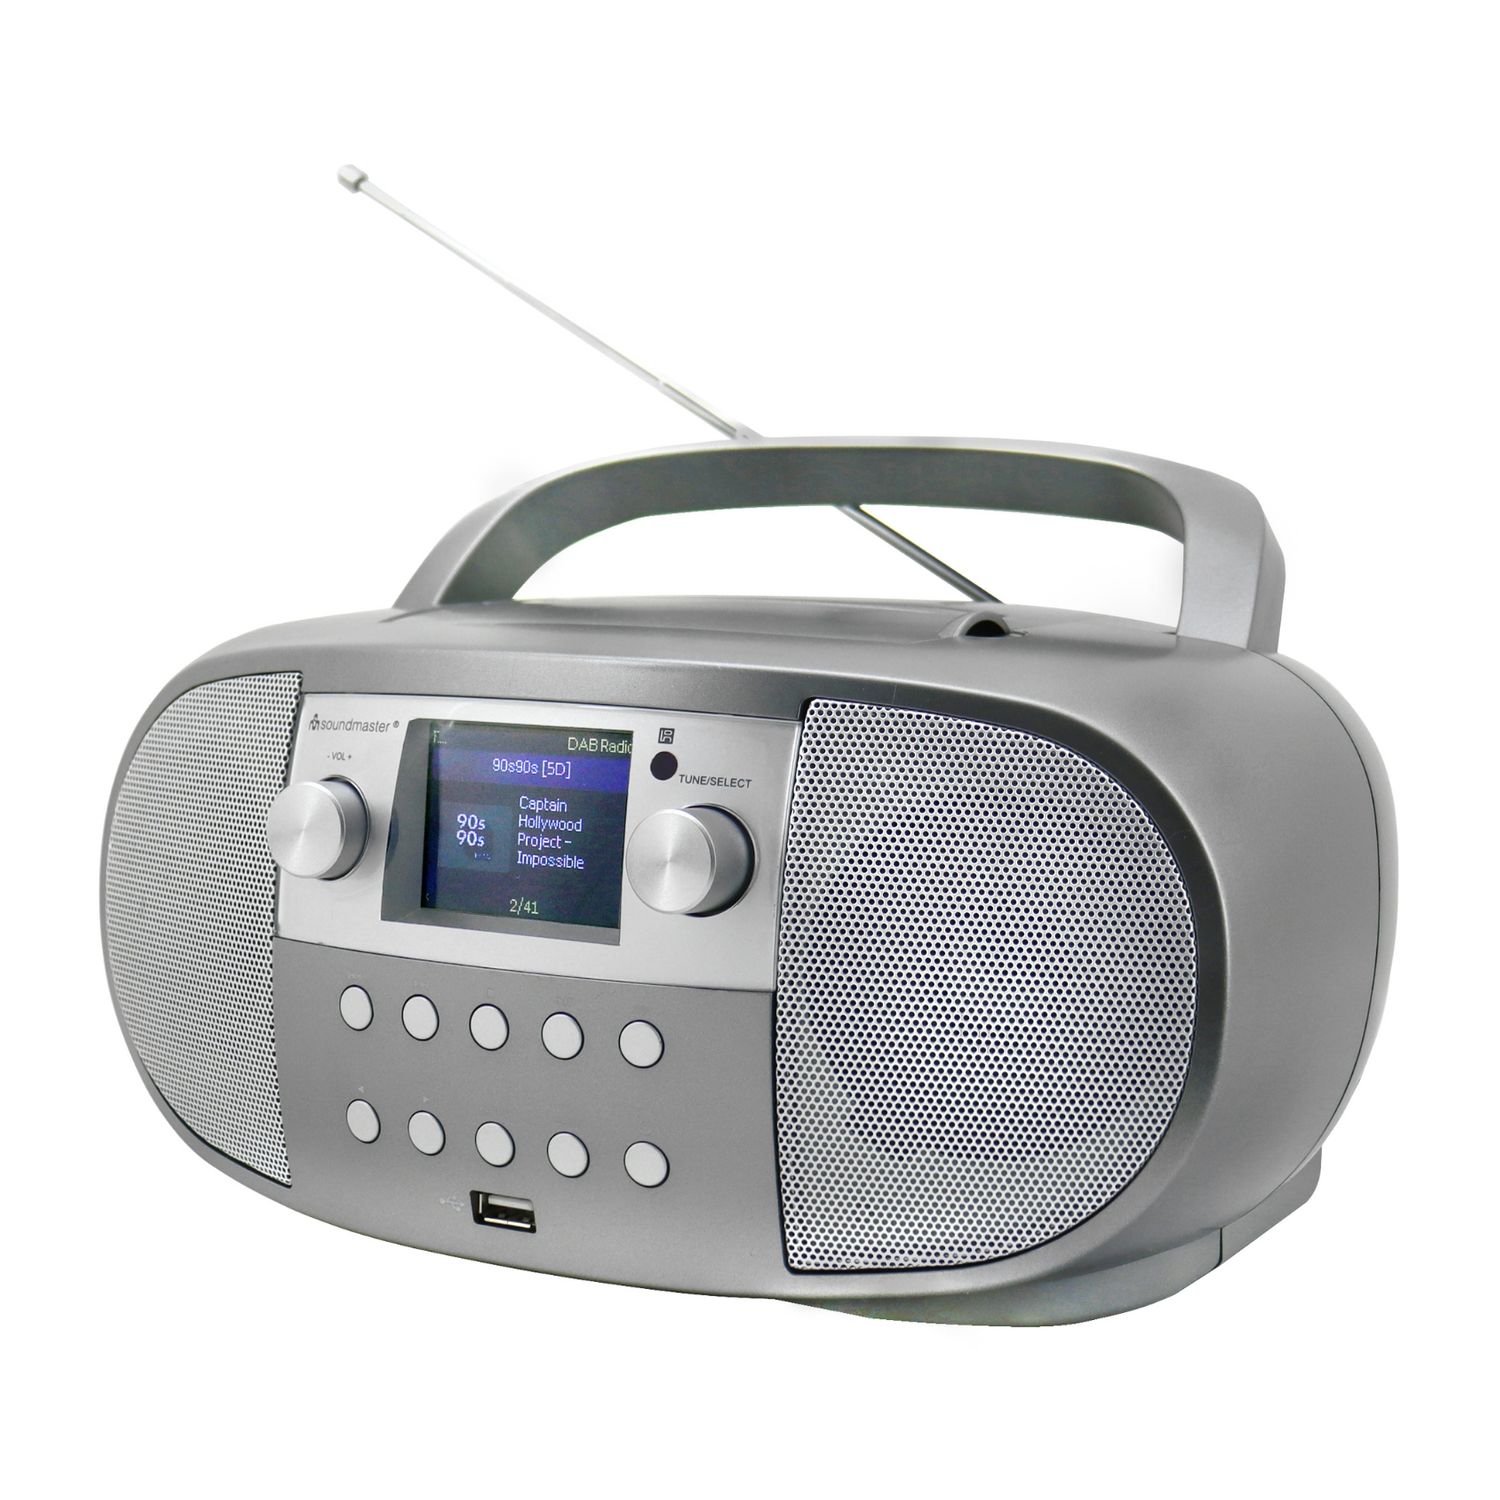 Soundmaster SCD7600TI Boombox Radio Internet Radio réseau WLAN DLNA Bluetooth DAB+ CD USB MP3 Fonction réveil Fonction livre audio Écran couleur